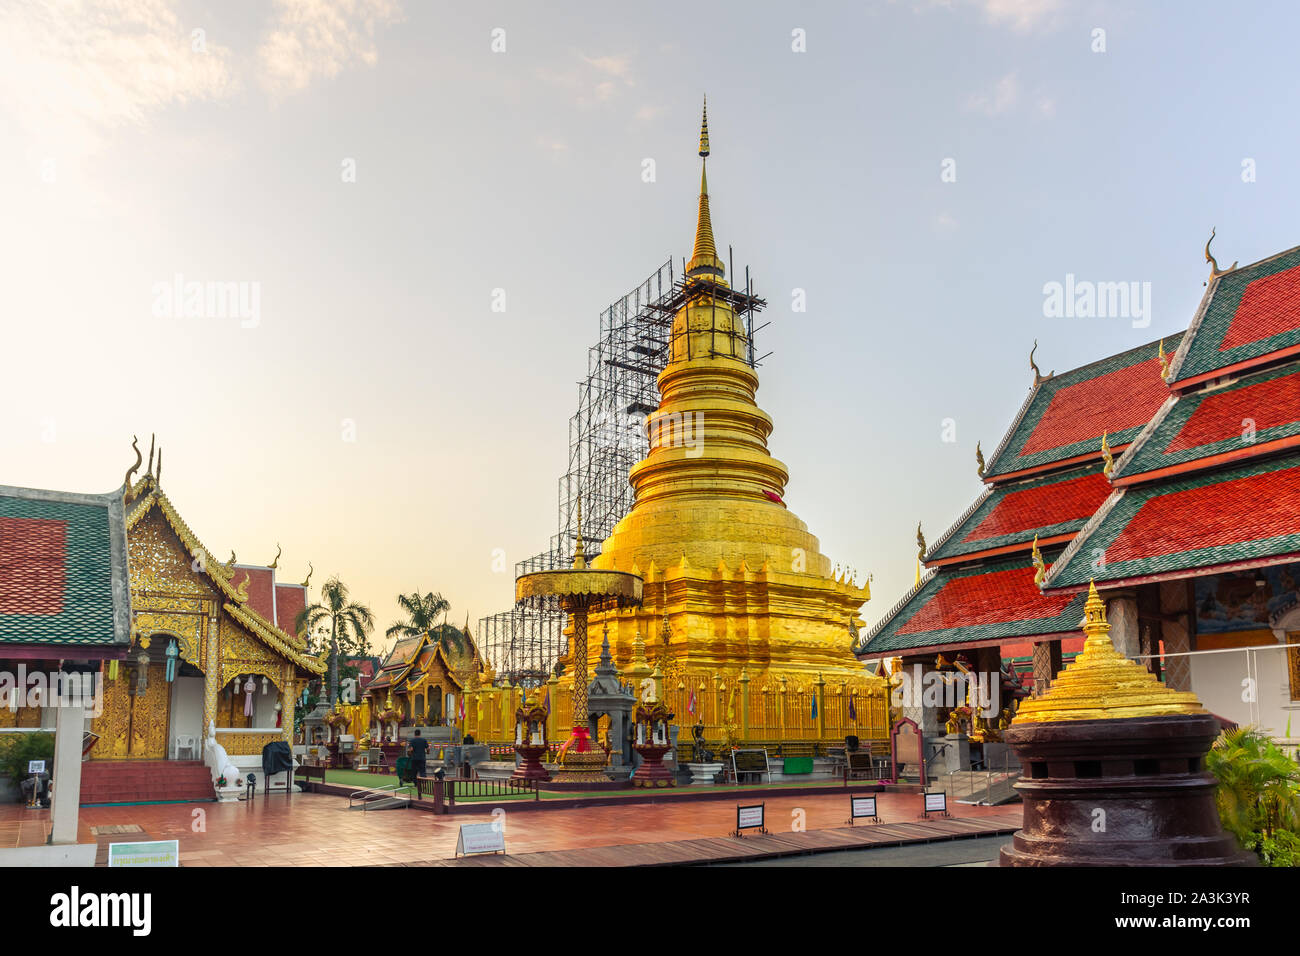 Belle vue sur le coucher de soleil de Wat Phra That Hariphunchai c'est un temple bouddhiste en voyage Lamphun, Thaïlande. 22 août 2019. Banque D'Images